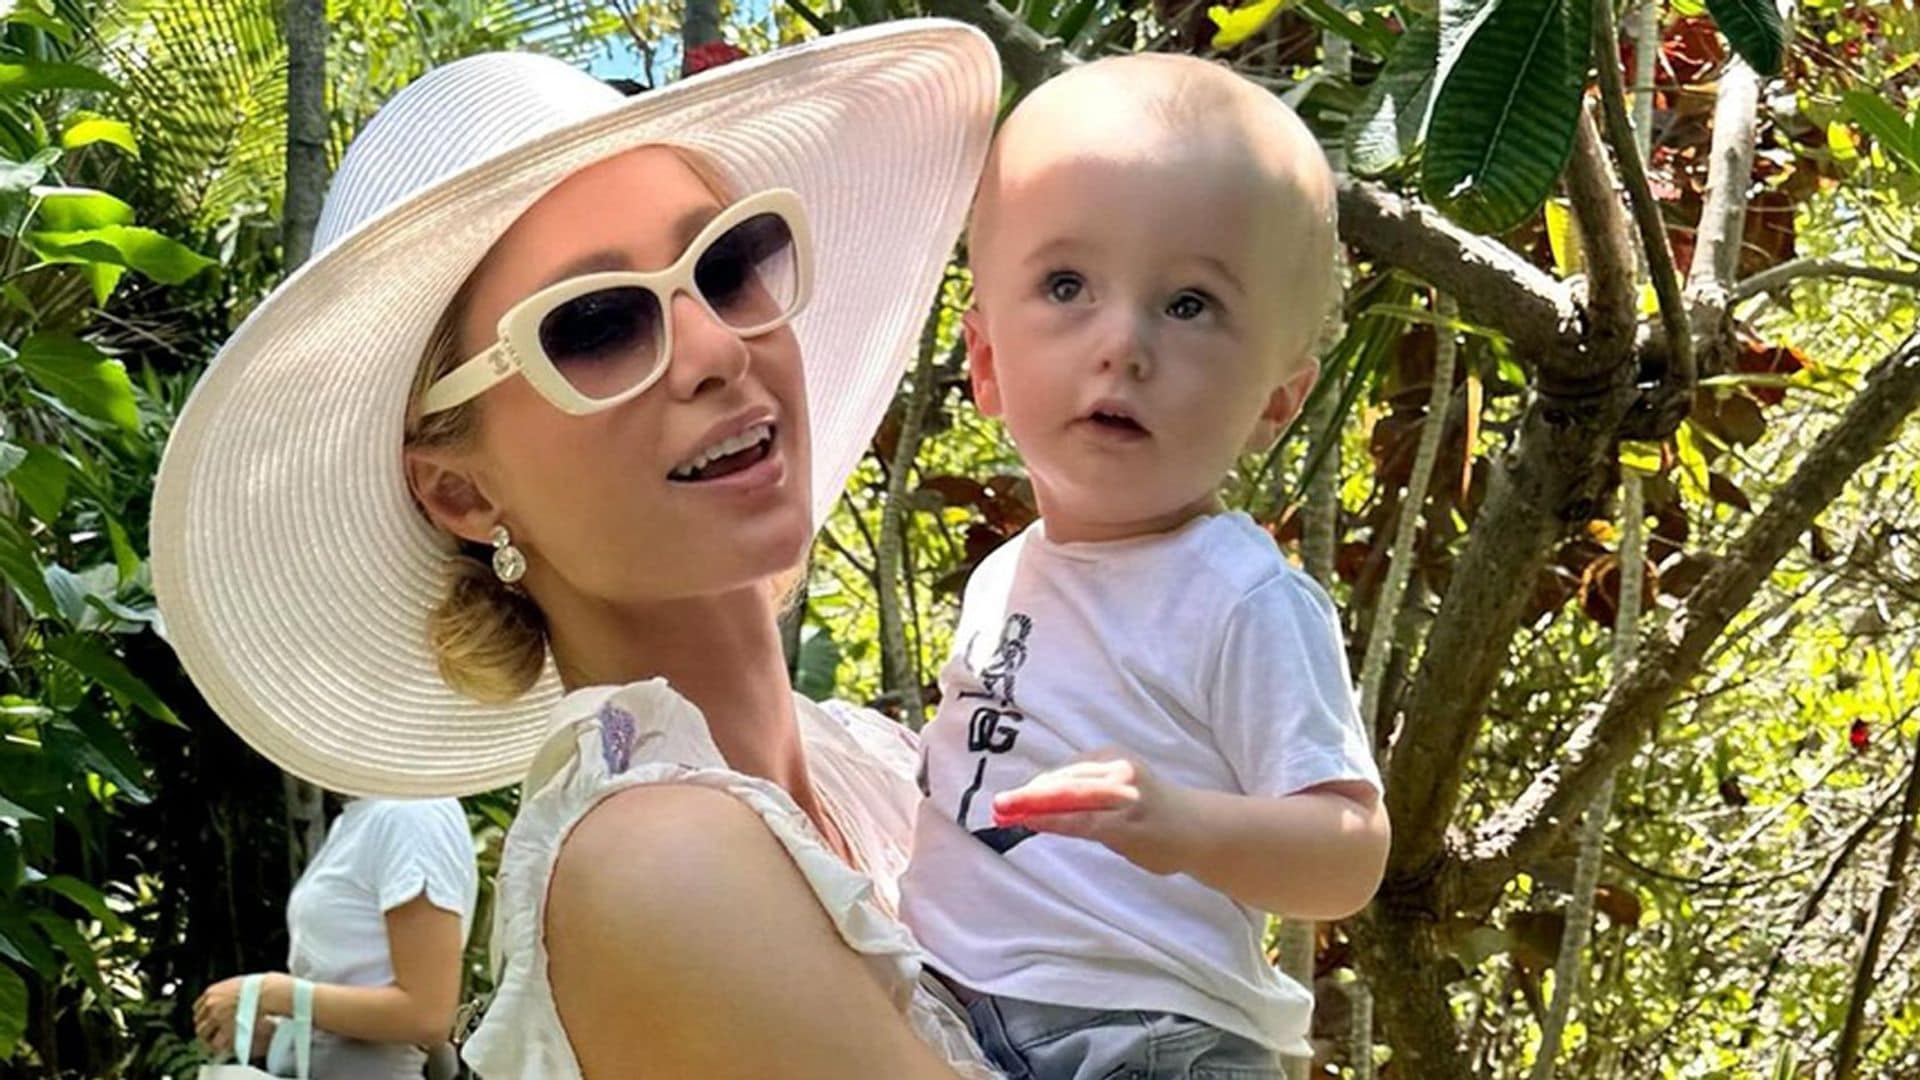 Paris Hilton comparte las imágenes de sus vacaciones caribeñas en familia y todos se hacen la misma pregunta